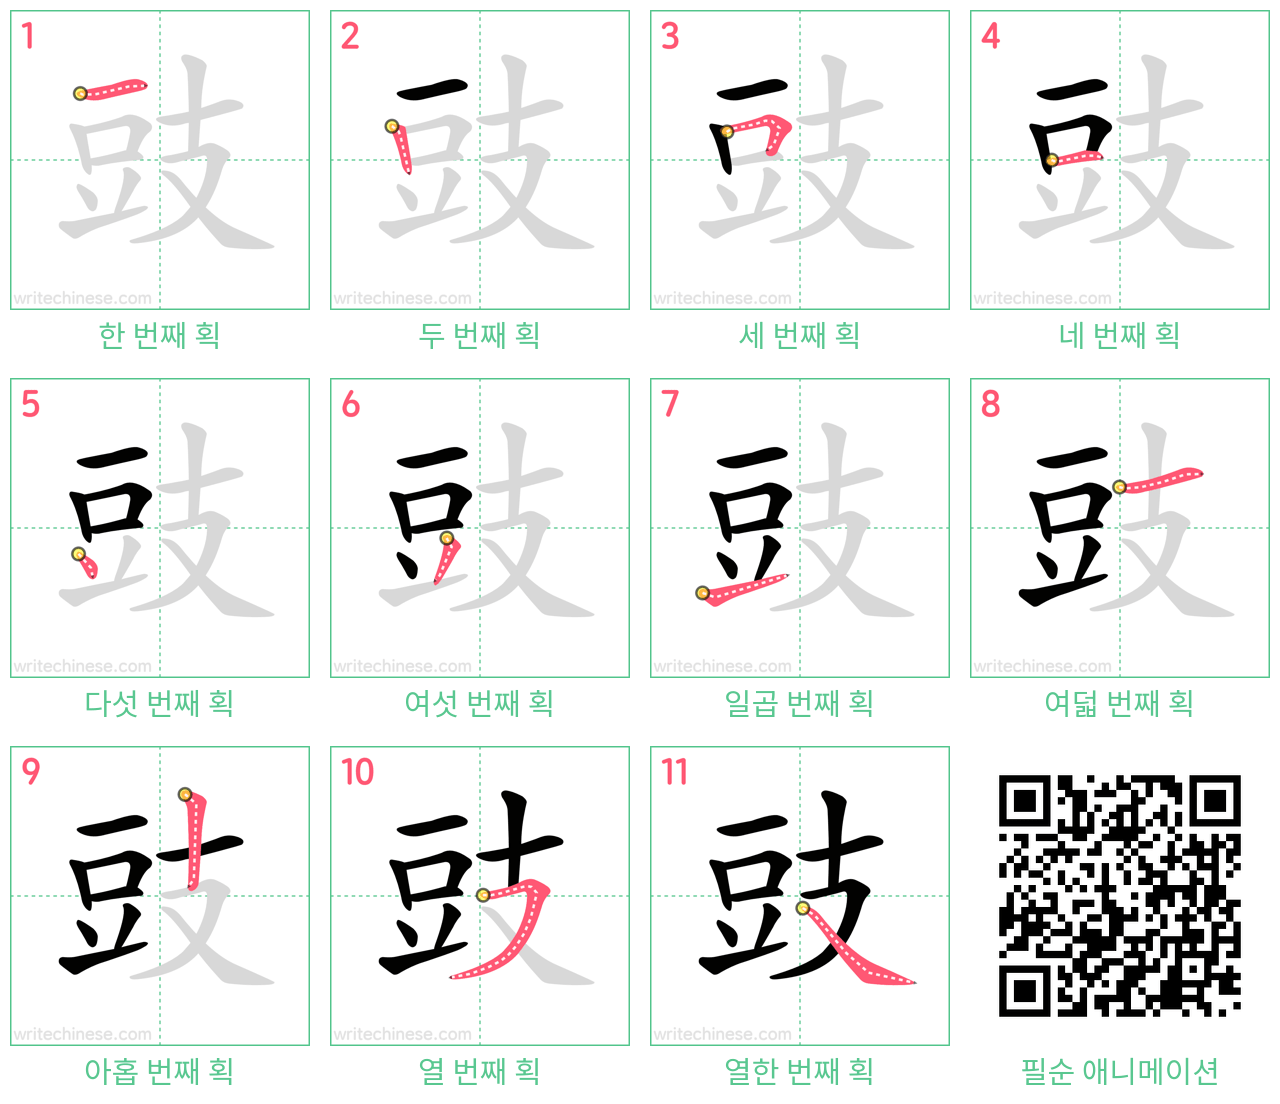 豉 step-by-step stroke order diagrams